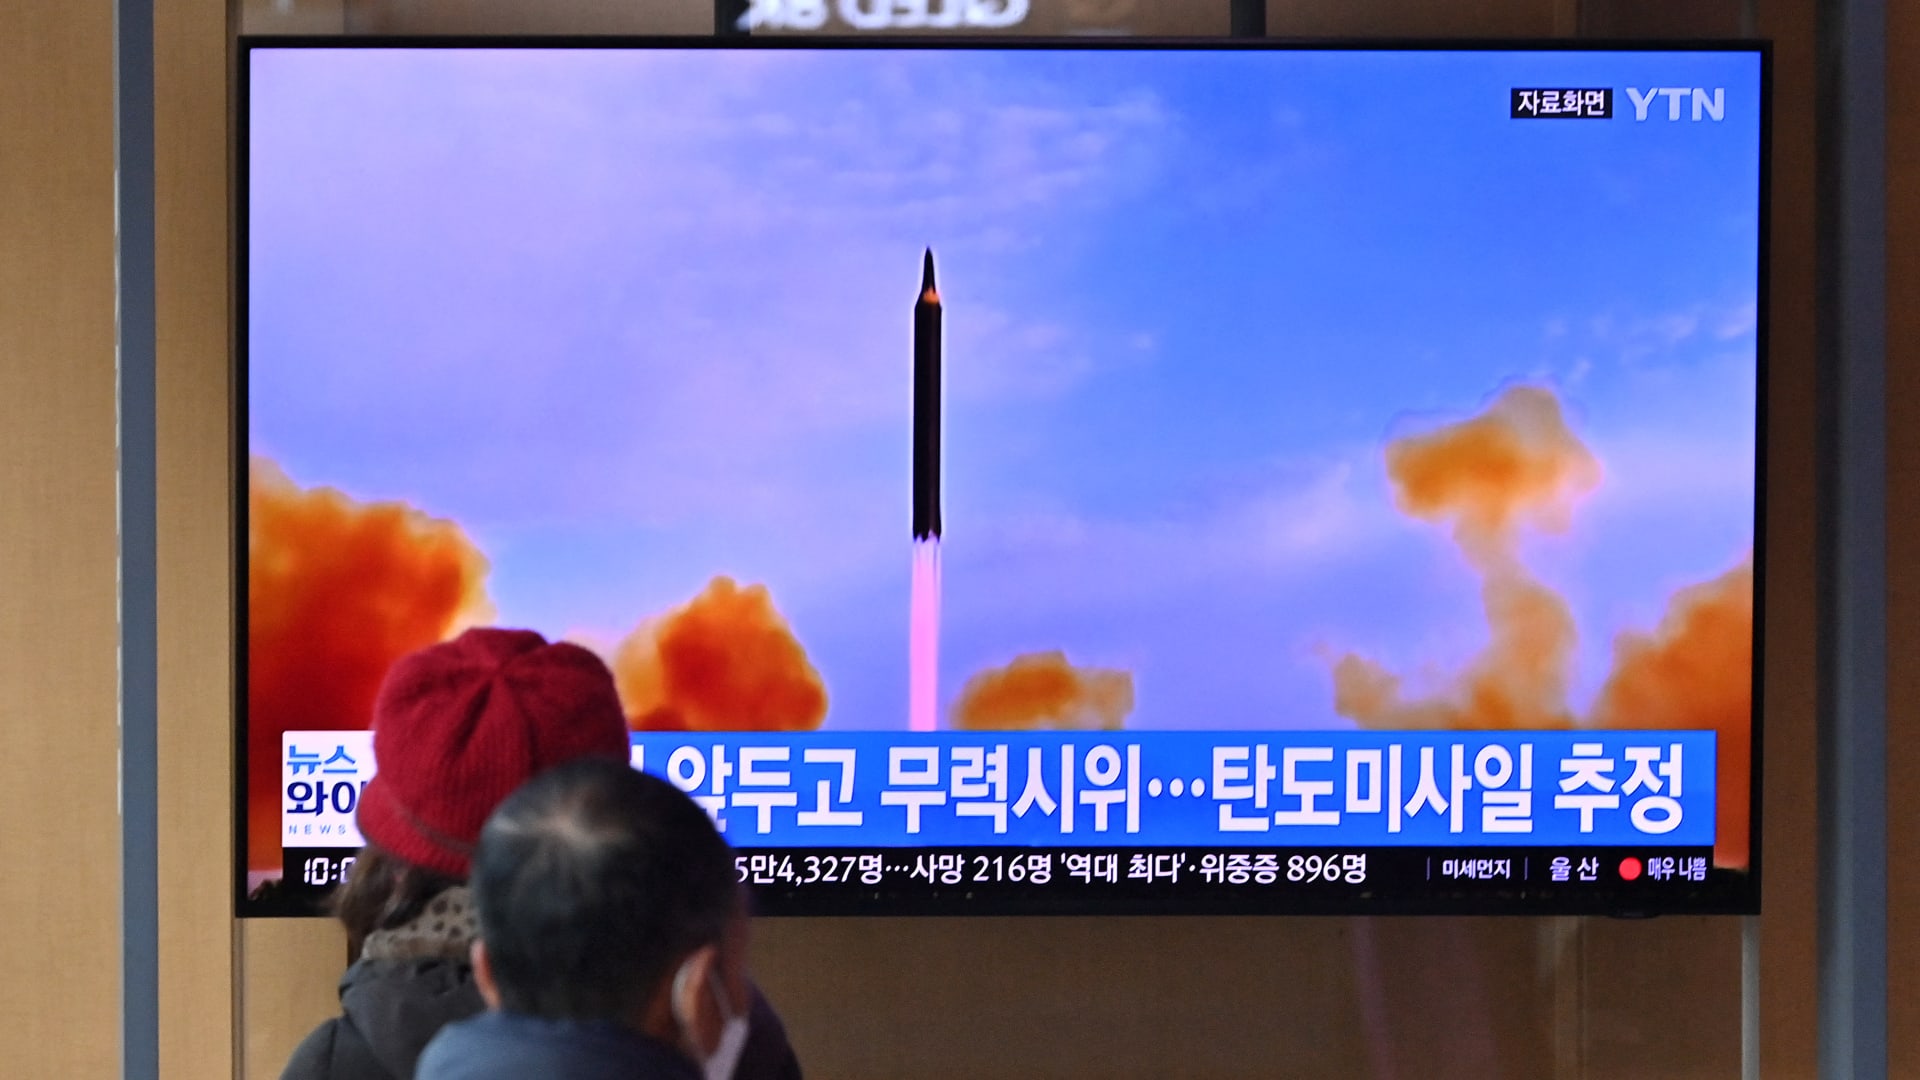 شاهد لحظة إطلاق كوريا الشمالية صاروخًا بالستيًا